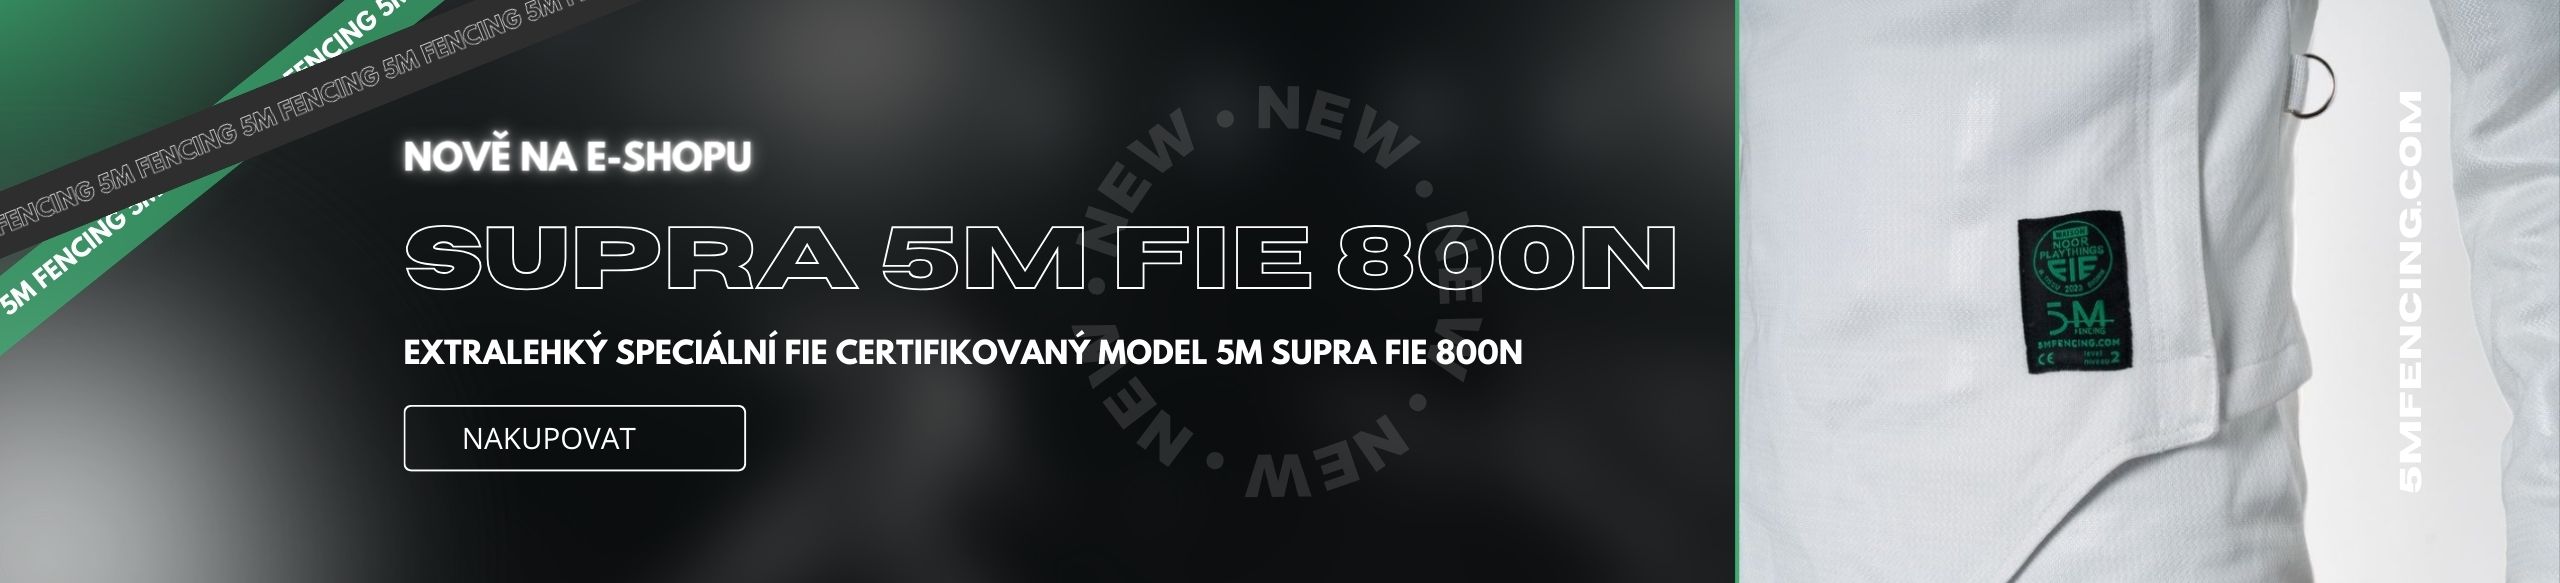 Nové 5M Supra  FIE 800N dresy a kalhoty